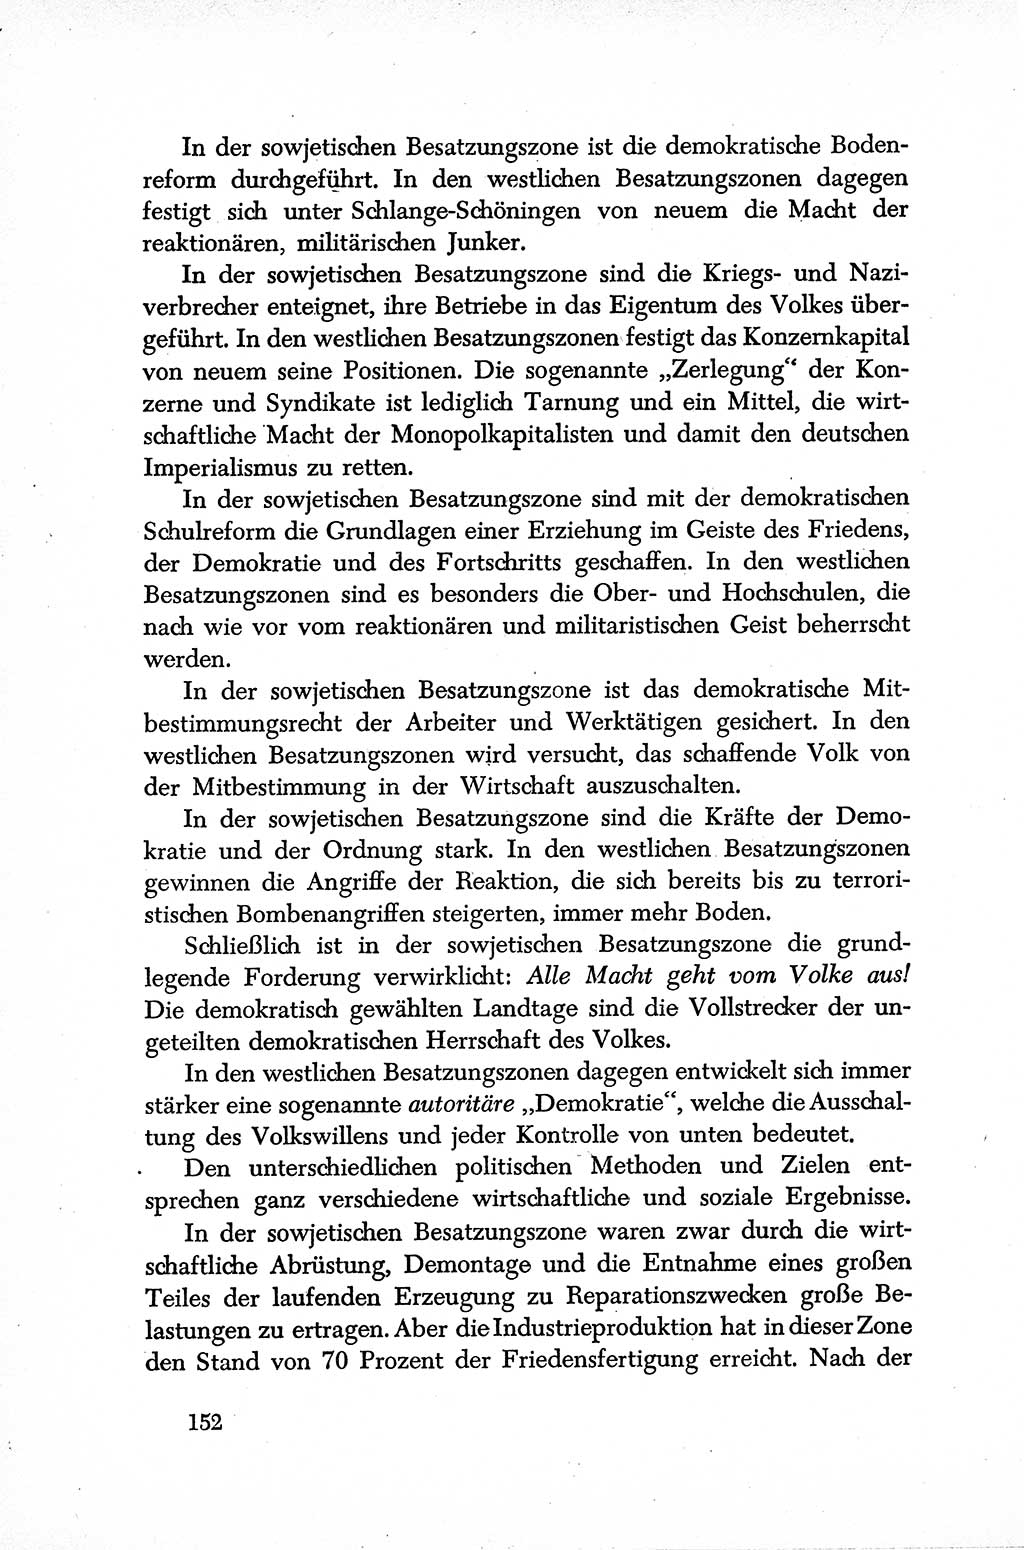 Dokumente der Sozialistischen Einheitspartei Deutschlands (SED) [Sowjetische Besatzungszone (SBZ) Deutschlands] 1946-1948, Seite 152 (Dok. SED SBZ Dtl. 1946-1948, S. 152)